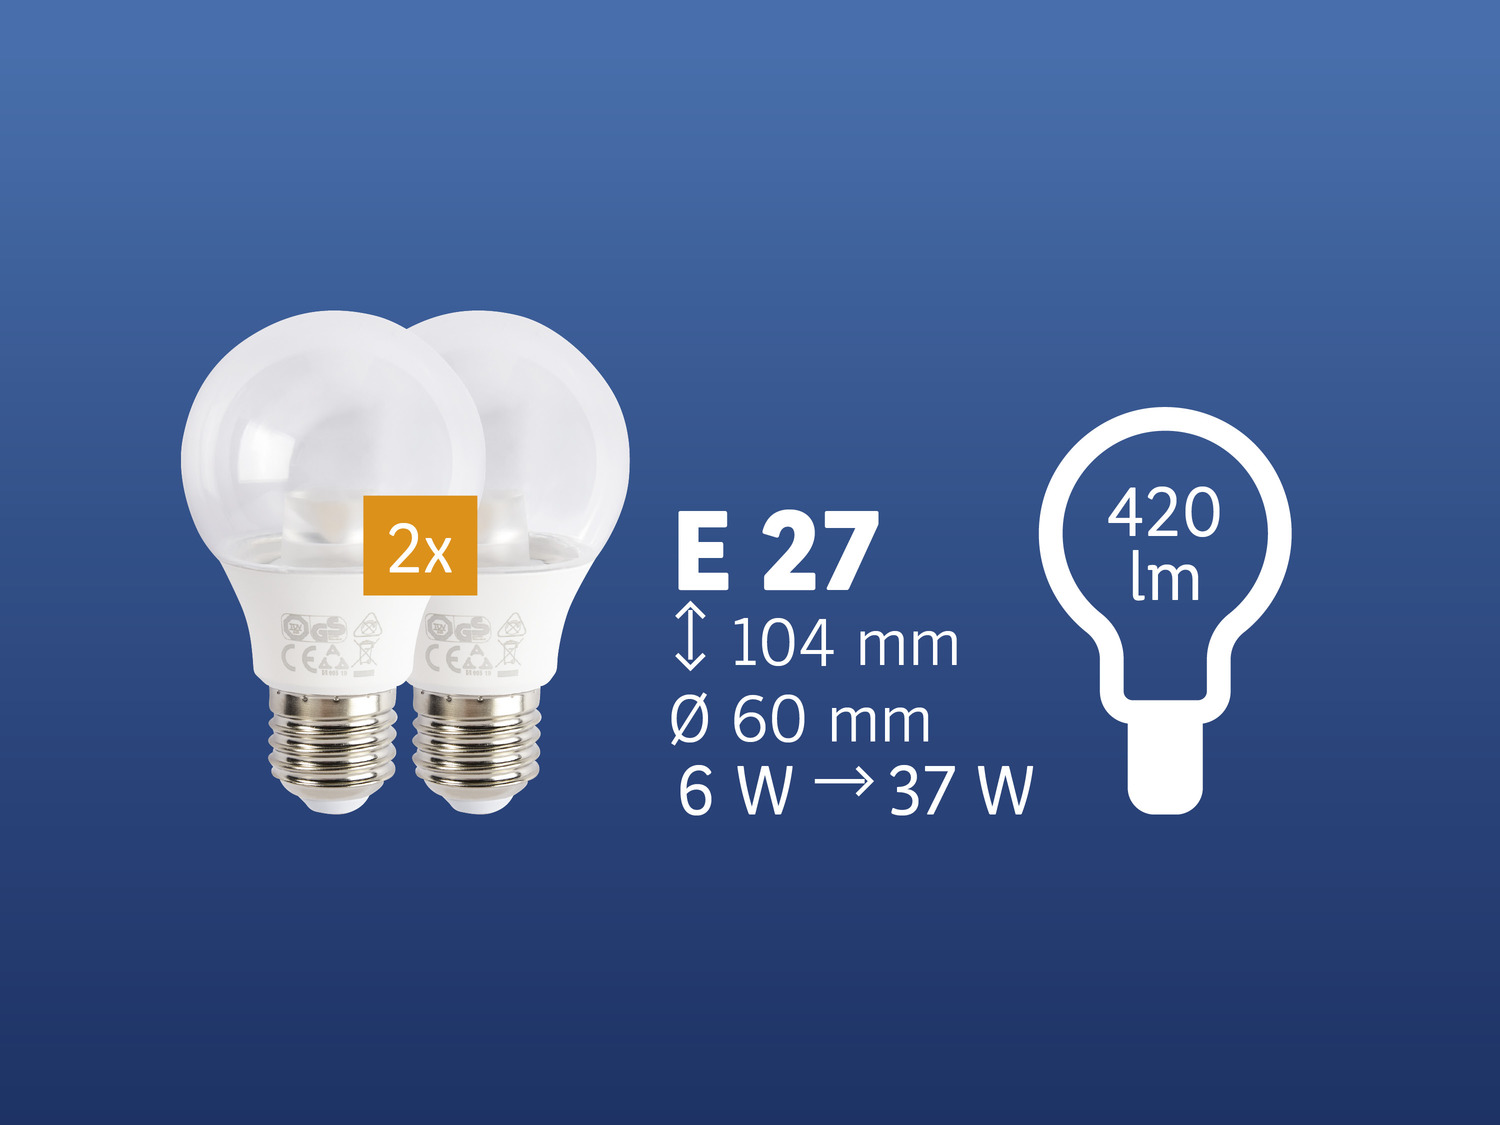 Żarówki LED, 2 szt. Livarno Lux, cena 11,99 PLN 
- klasa energetyczna A+
- ilość ...